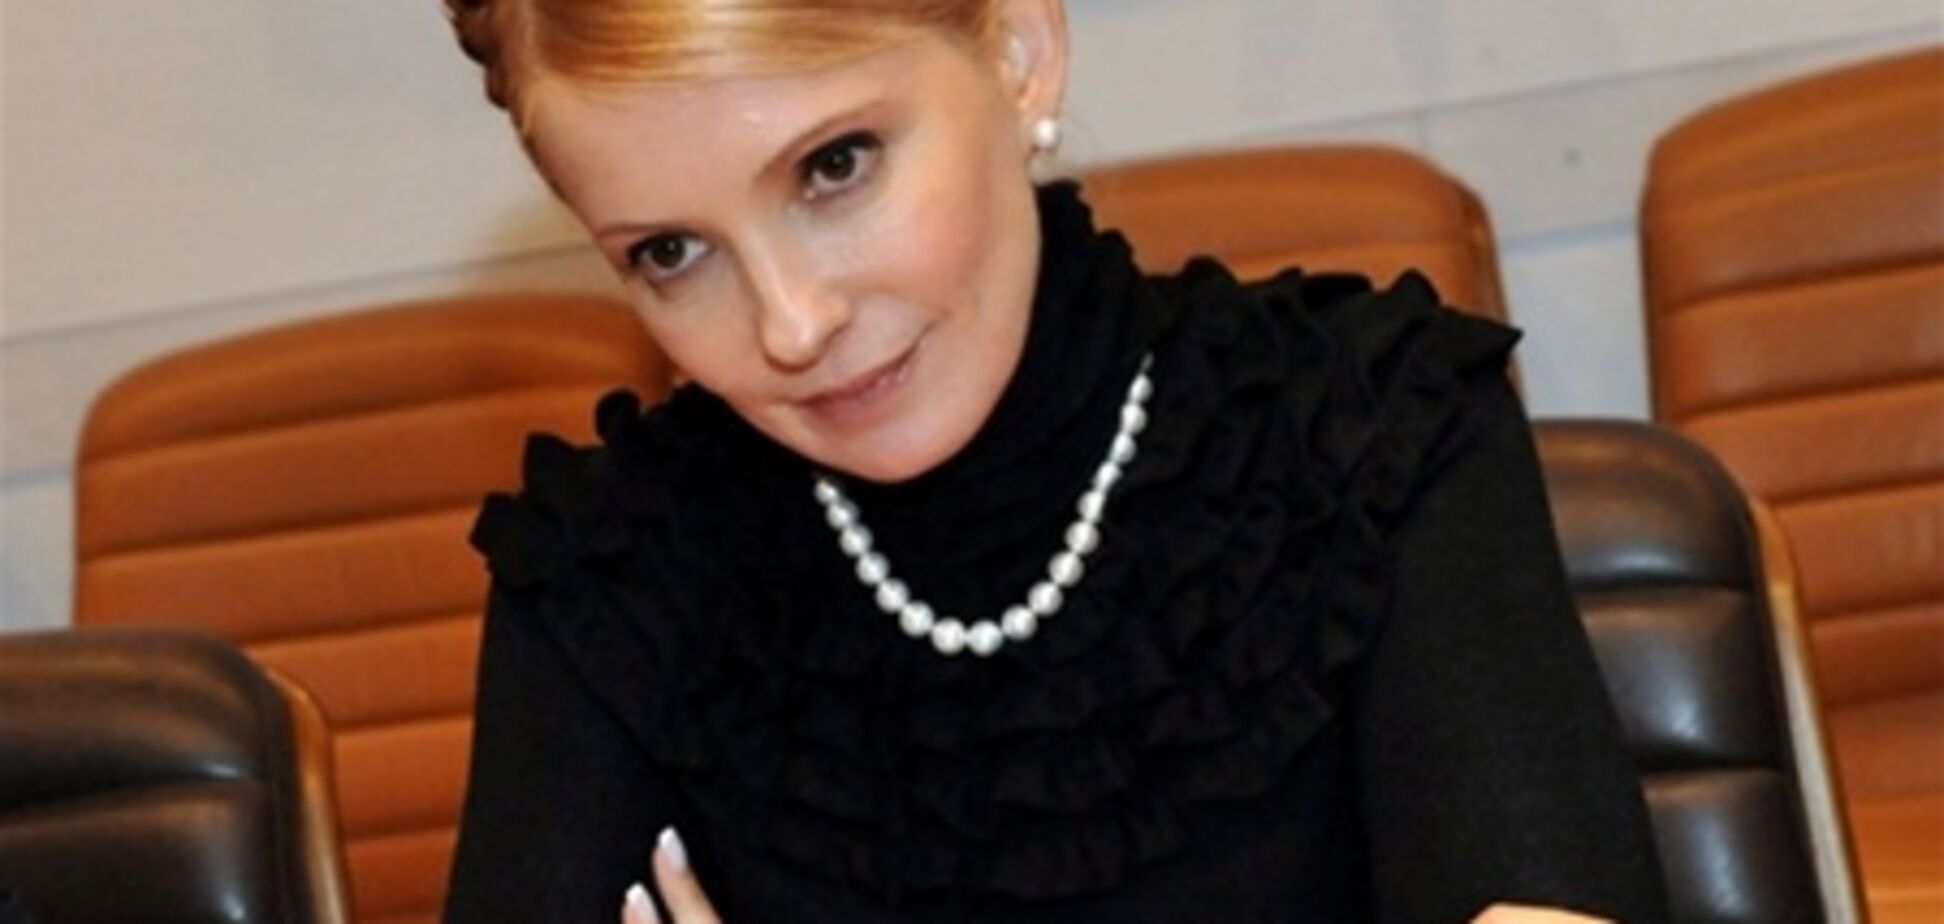 Тимошенко не знакома со свидетелем, которого будут допрашивать завтра - защитник